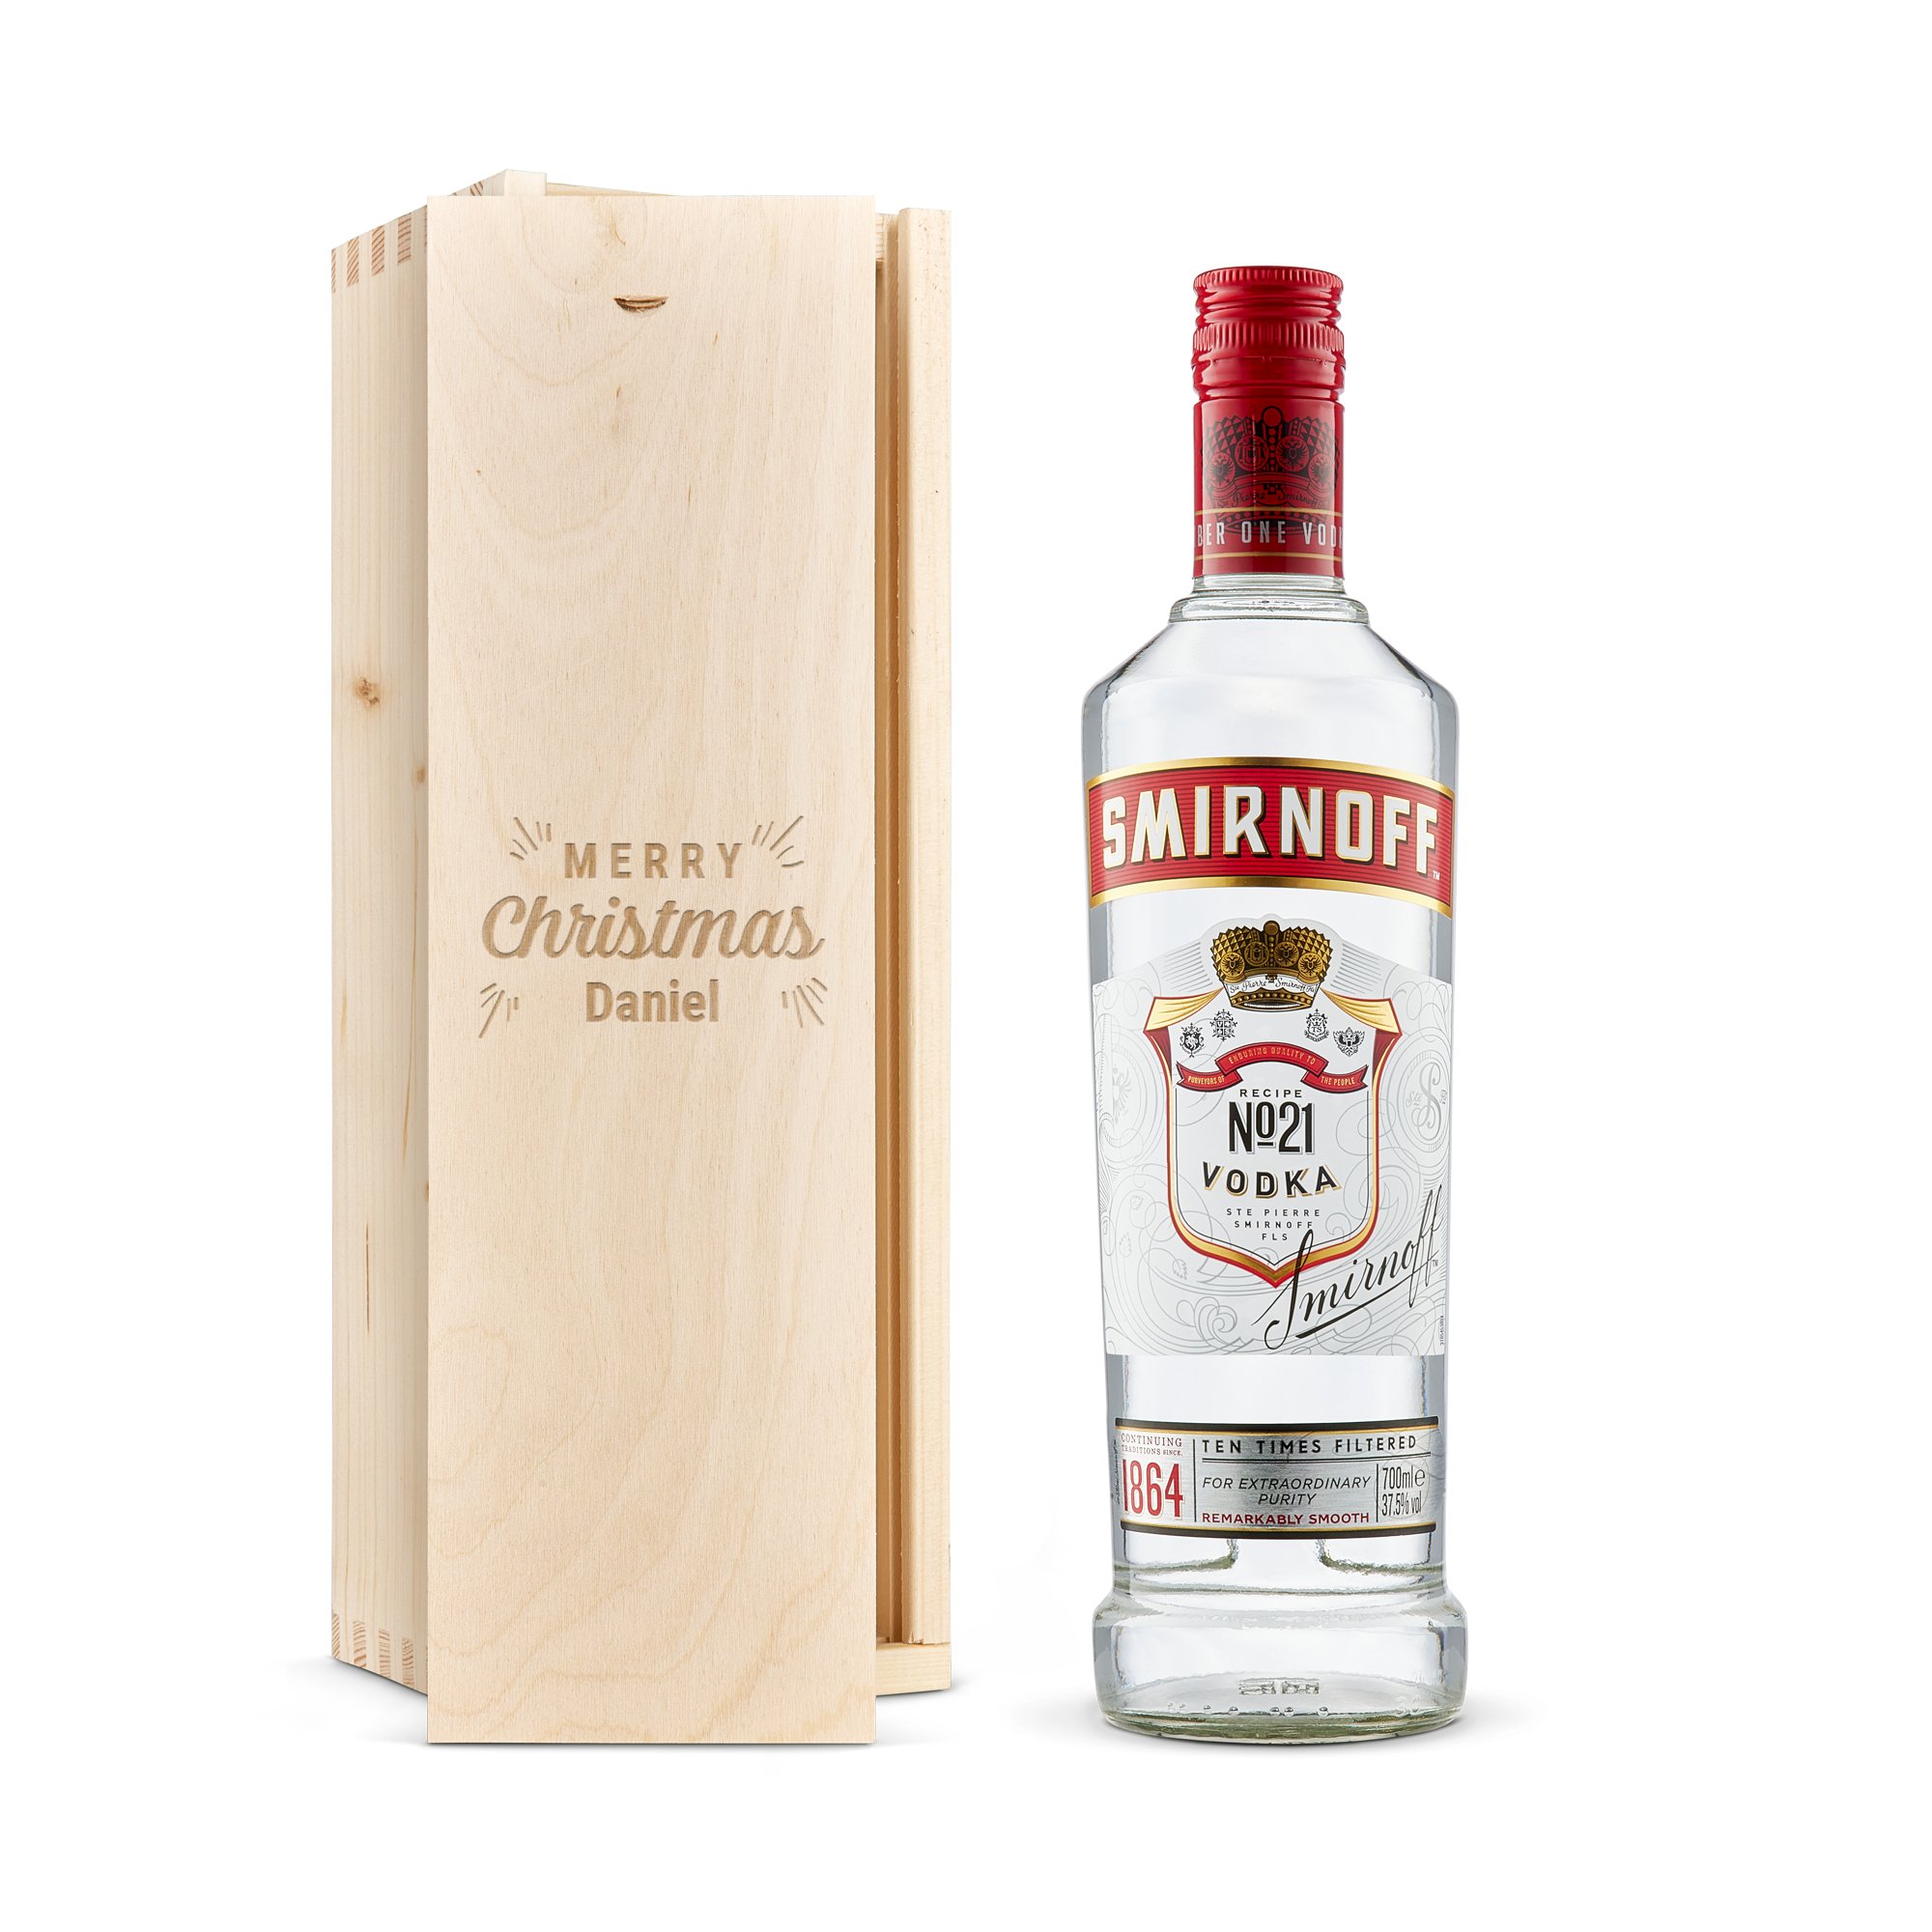 Smirnoff vodka in engraved case